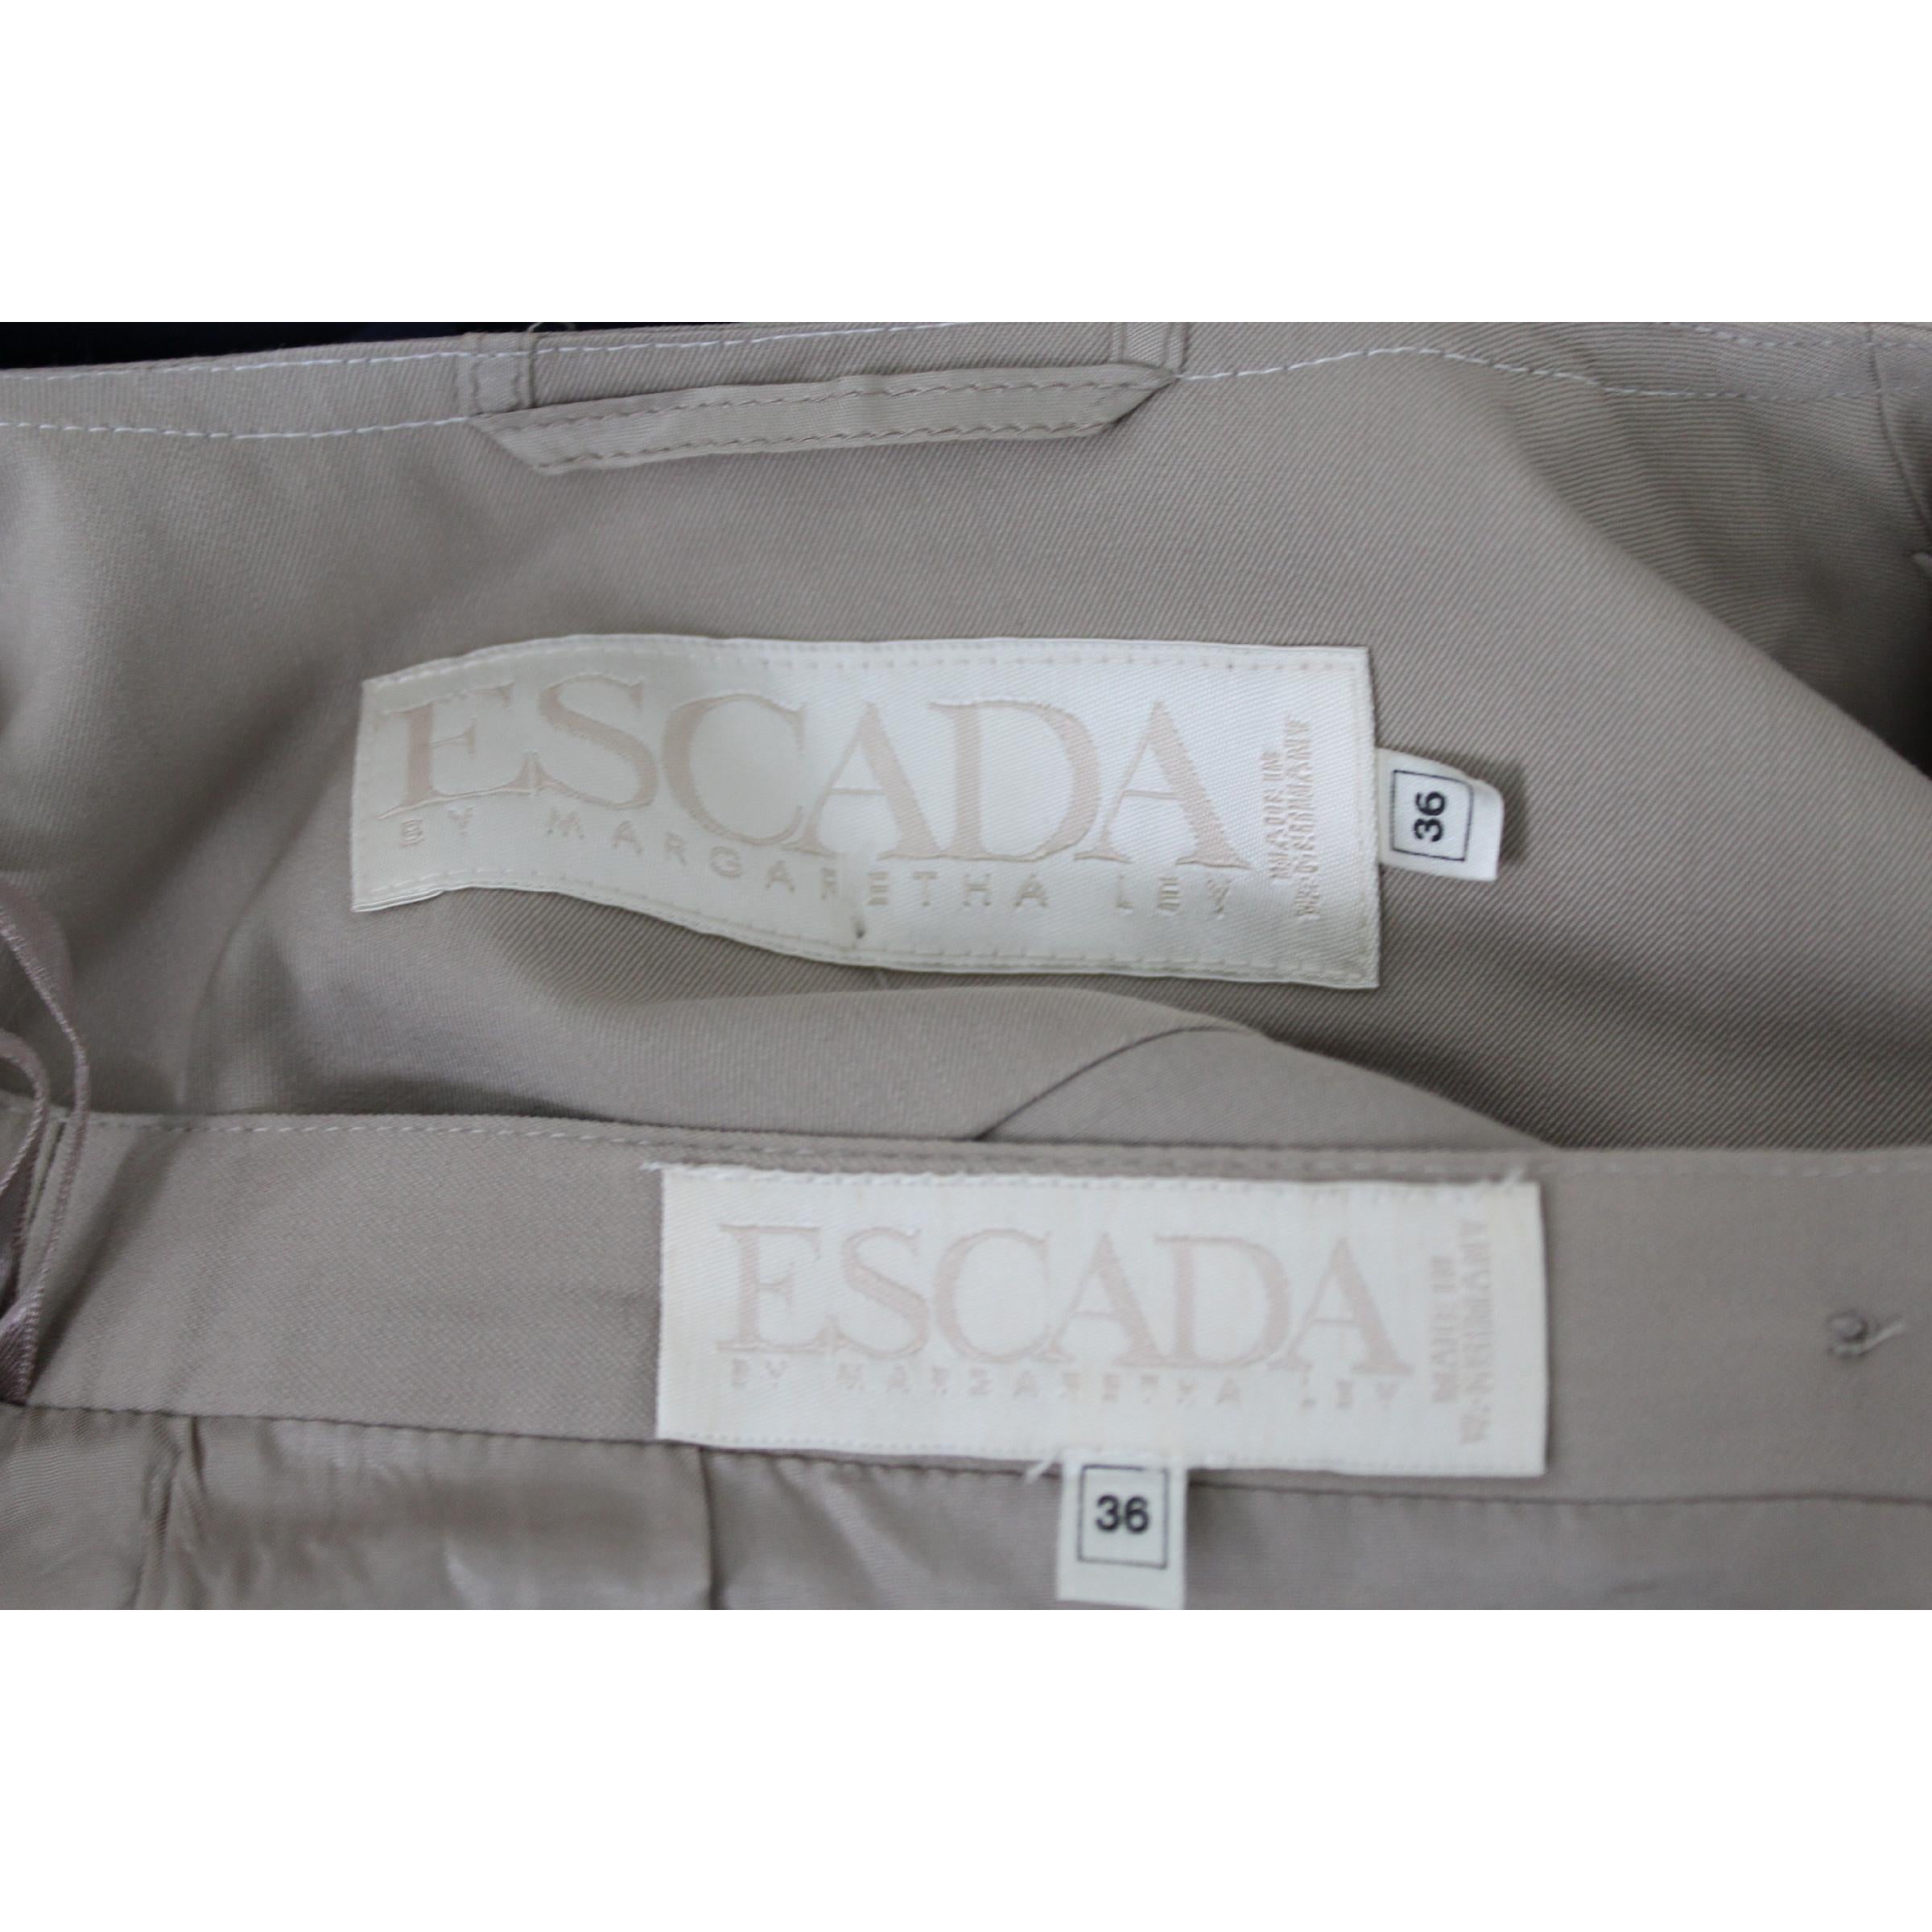 Escada Beige Cotton Vintage Classic Skirt Suit 1990s  For Sale 4